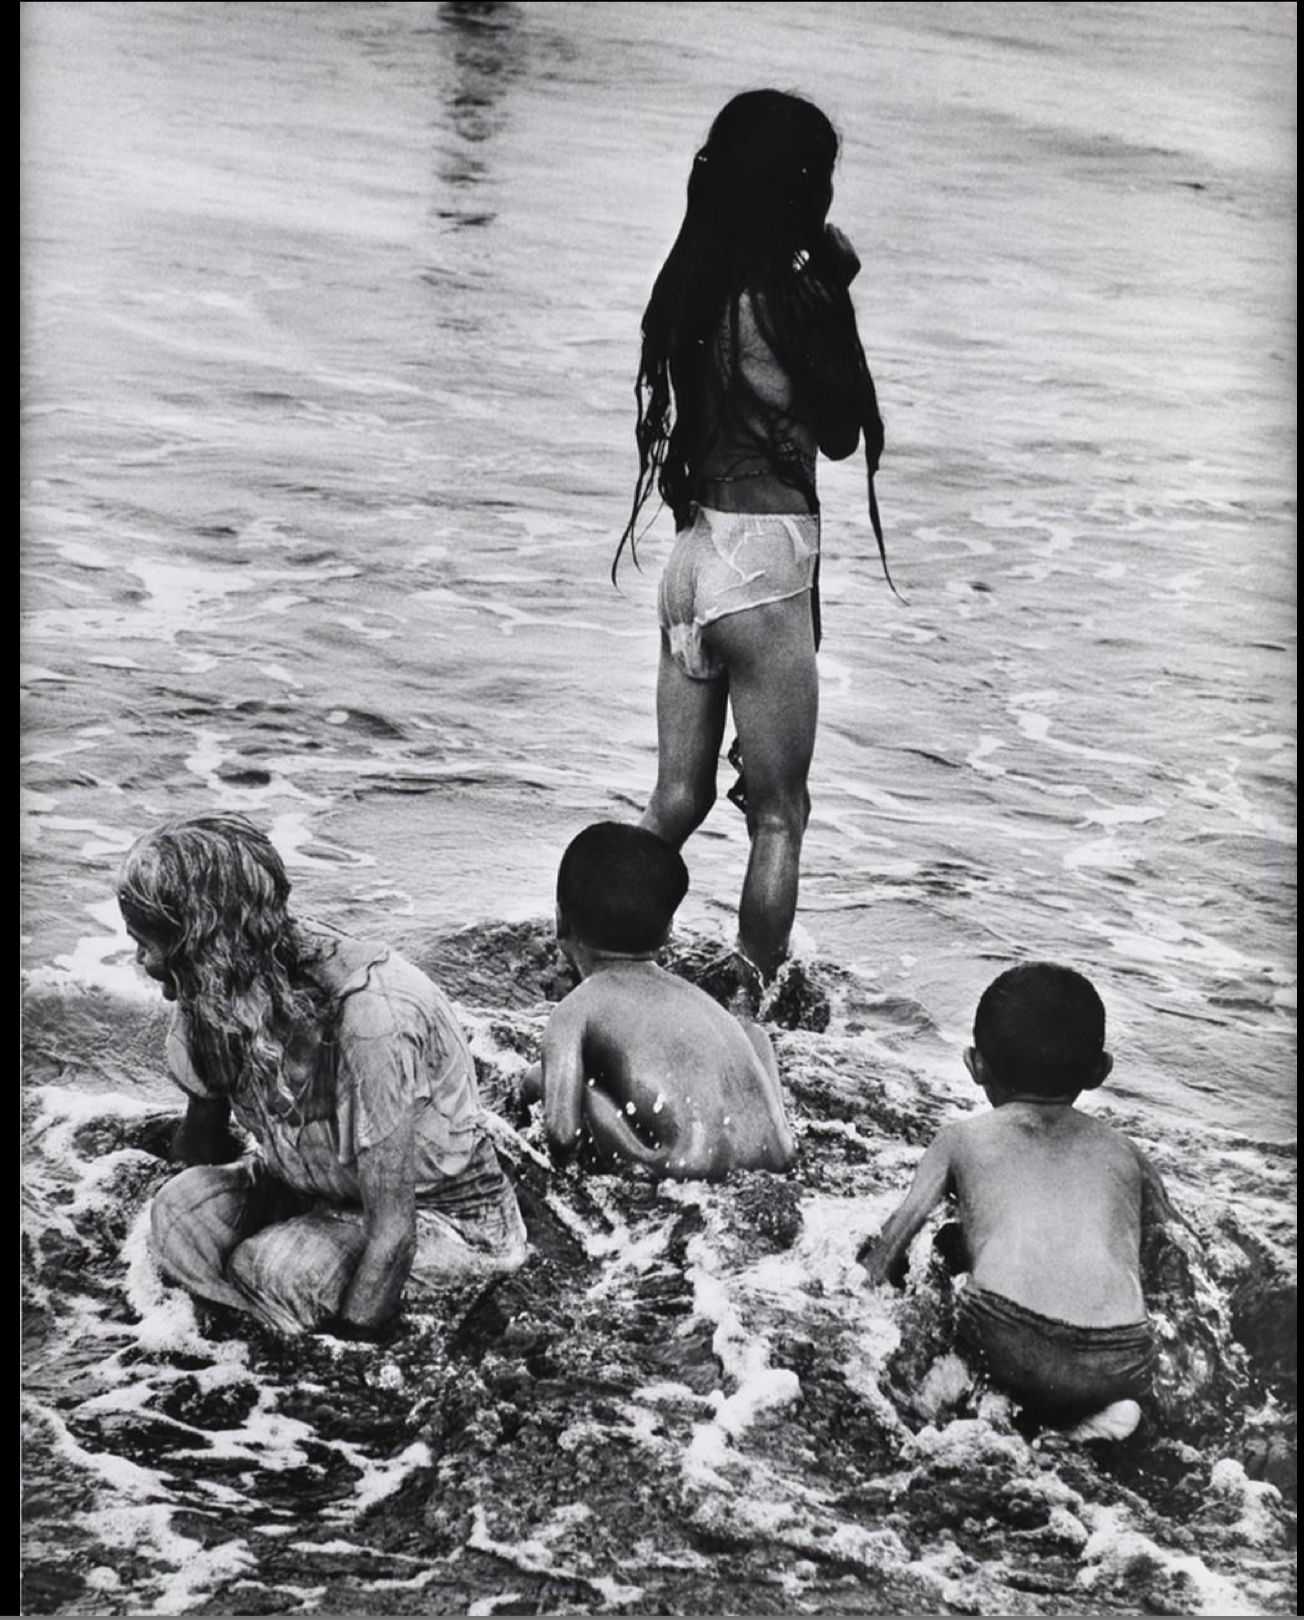 Ken Heyman: People Bathing in Water.